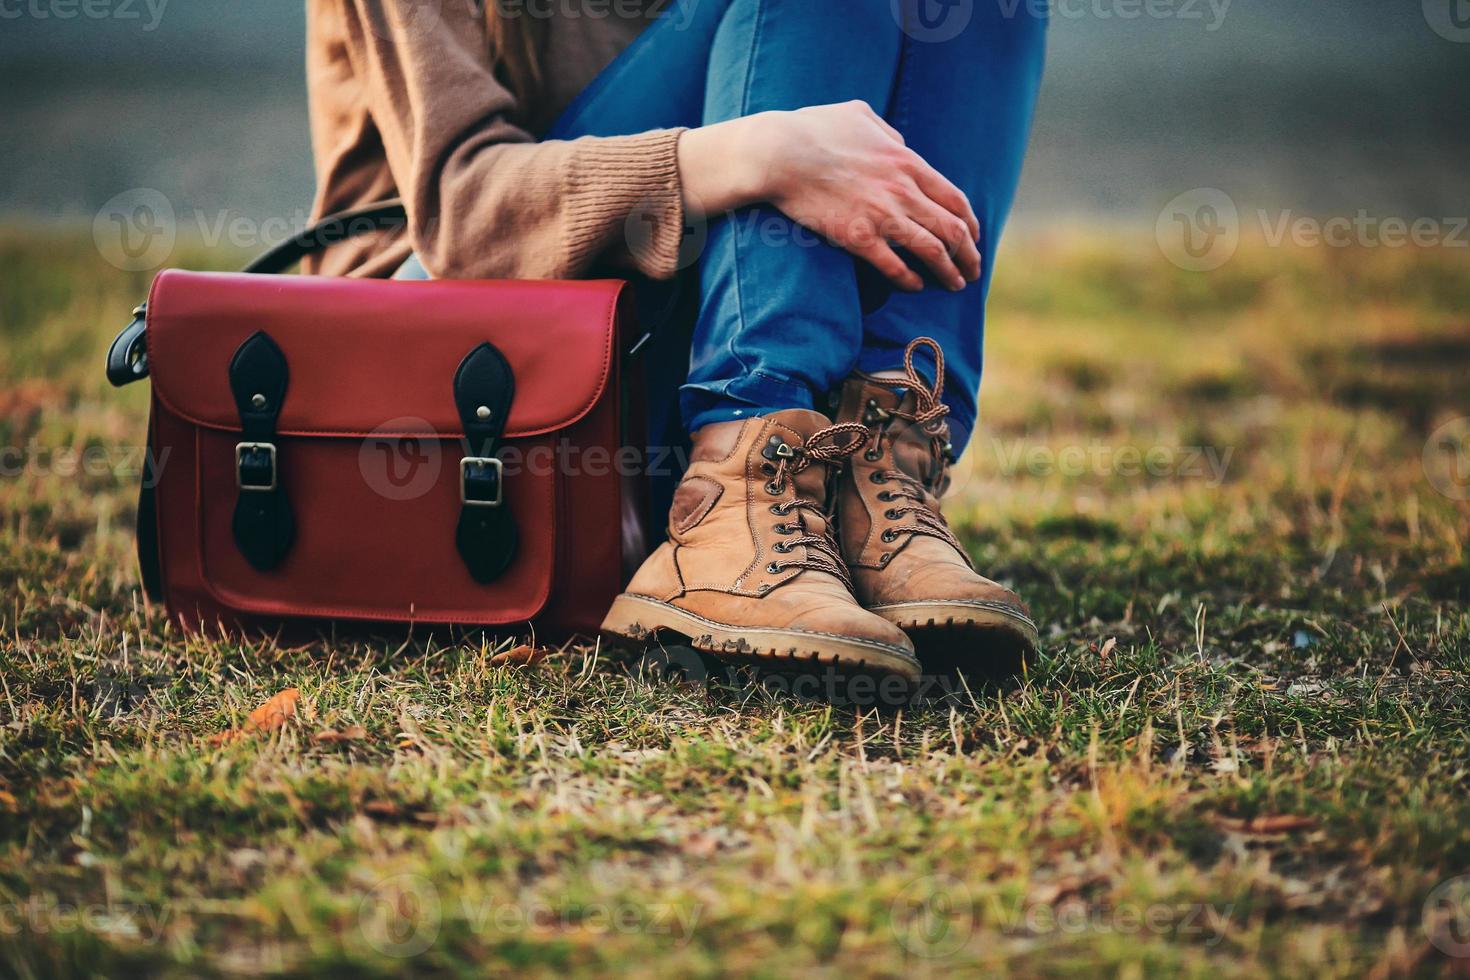 snygg ung flicka i bruna skor och en varm kappa som sitter i parken med en röd väska. foto